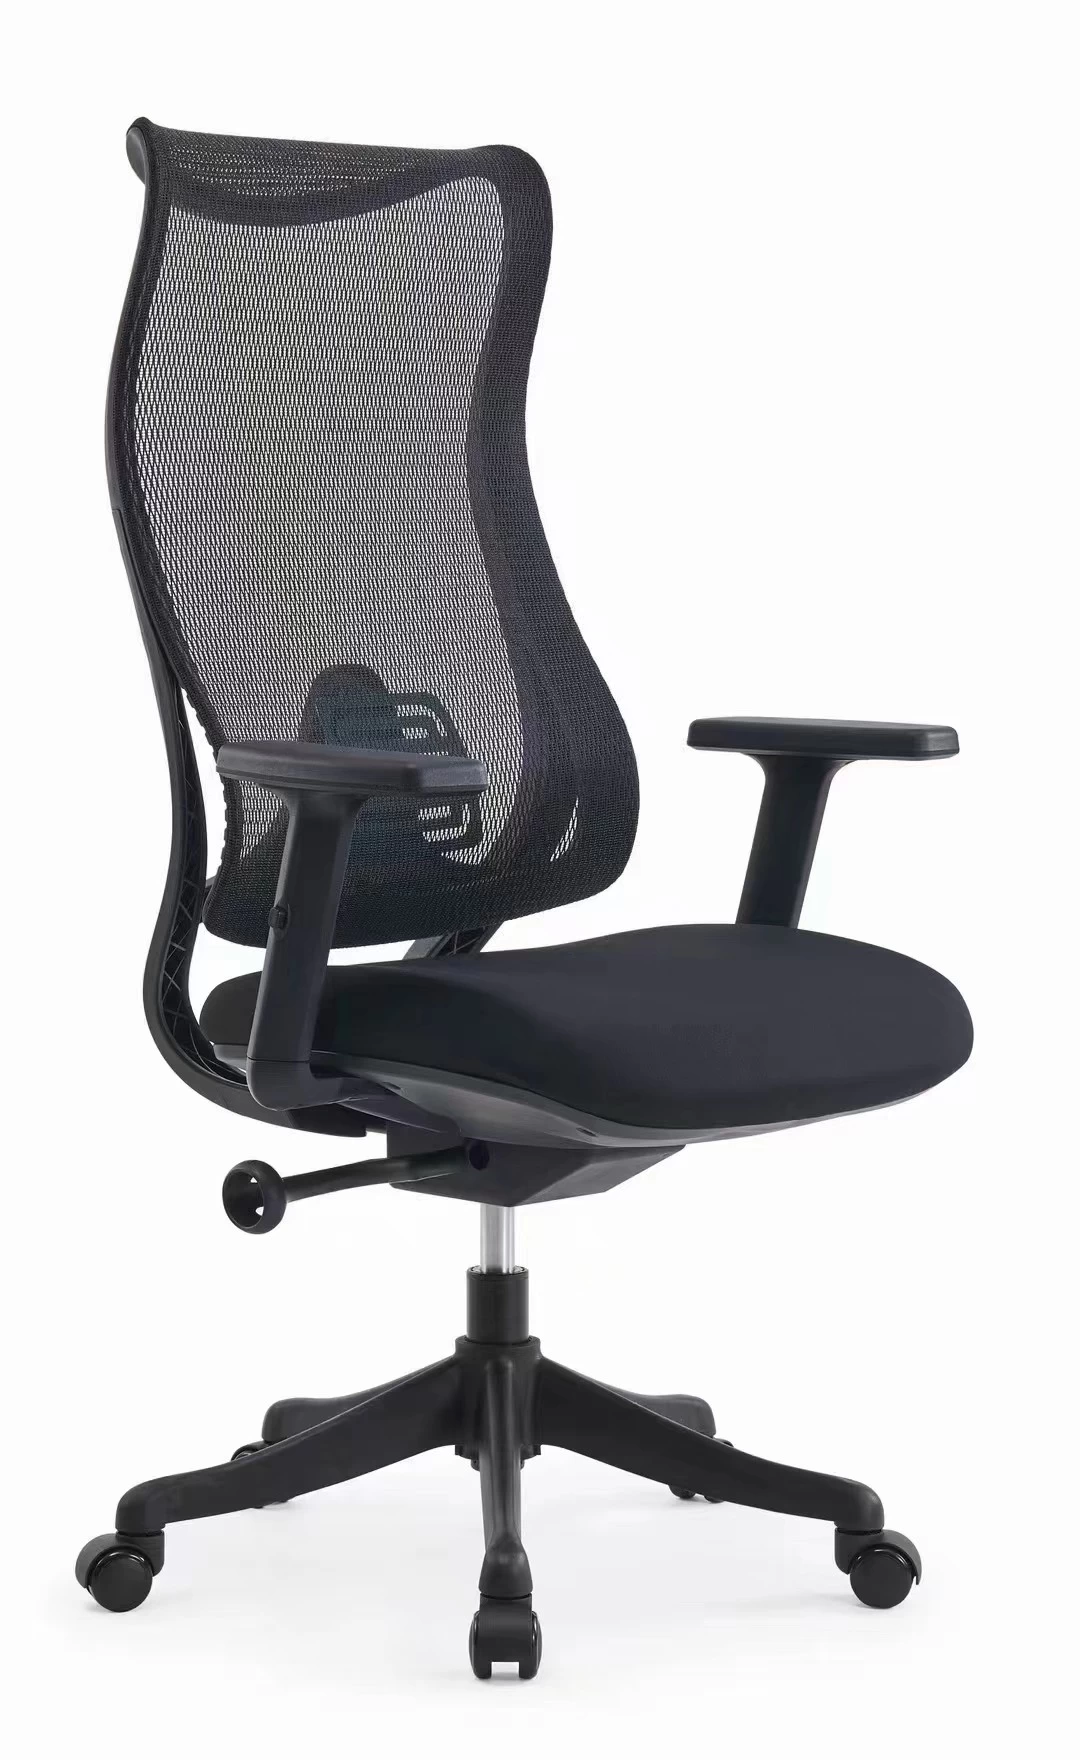 NewCity 639AF执行经理网状椅舒适的现代面料网椅高背部新设计可调式扶手椅Foshan China